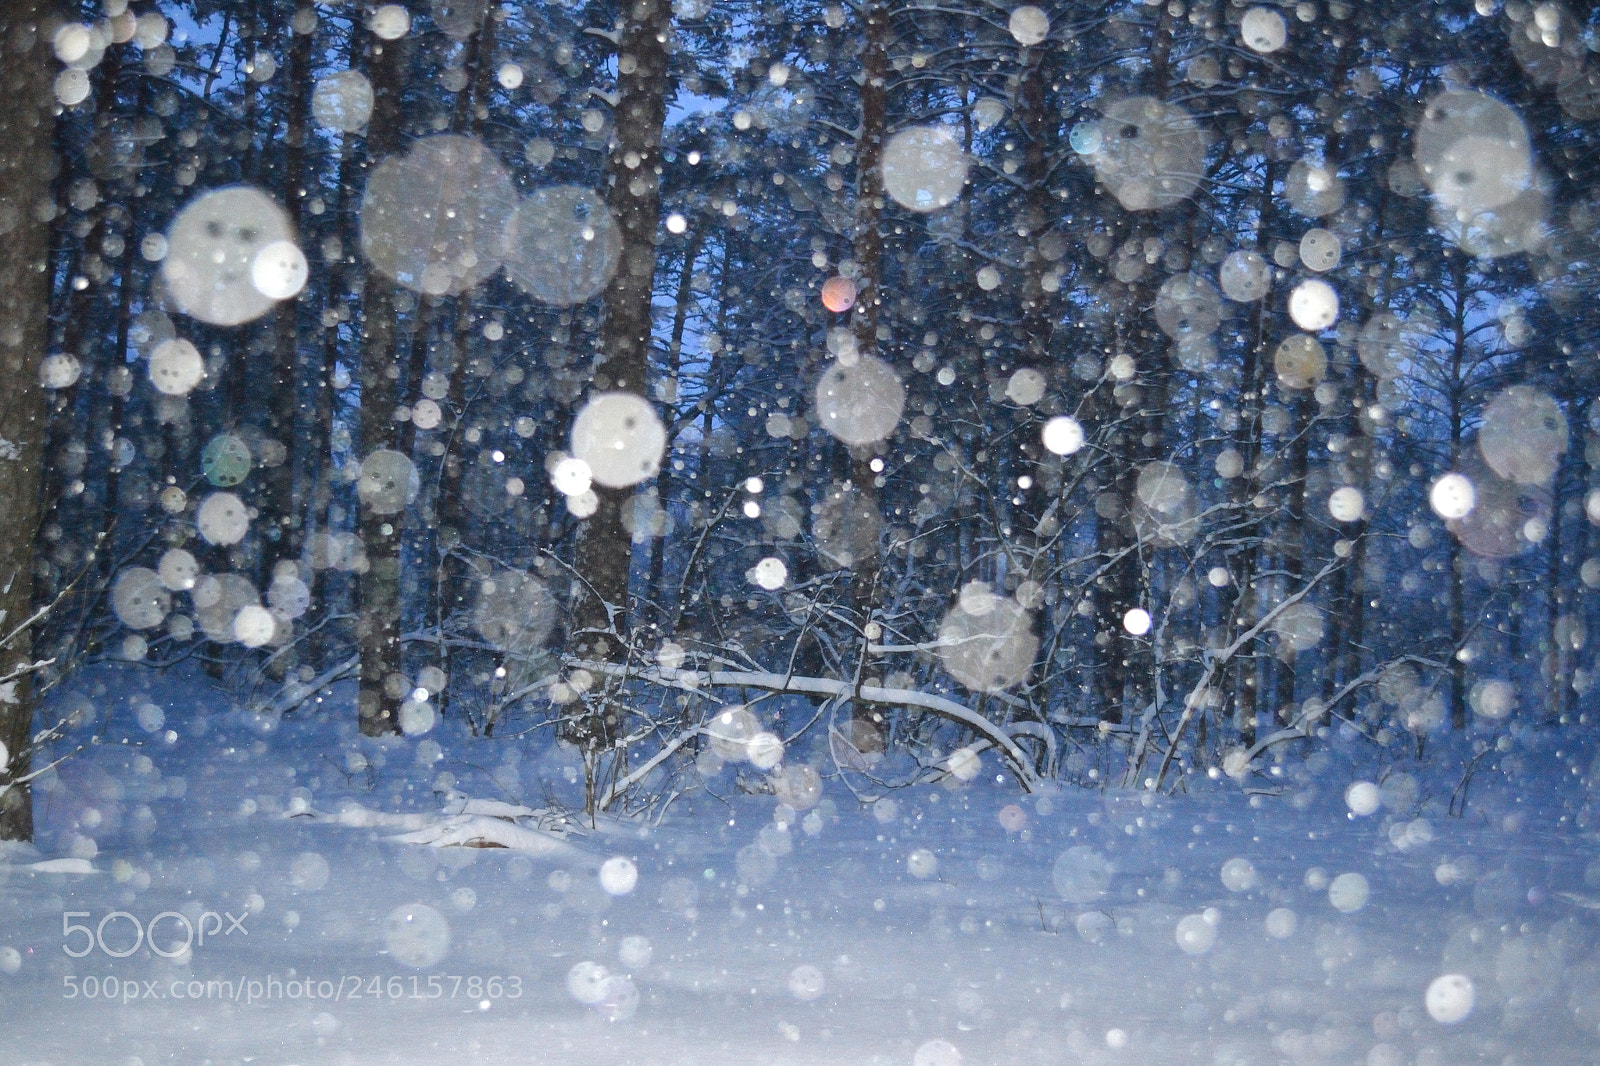 Nikon D3100 sample photo. Snow magic. photography